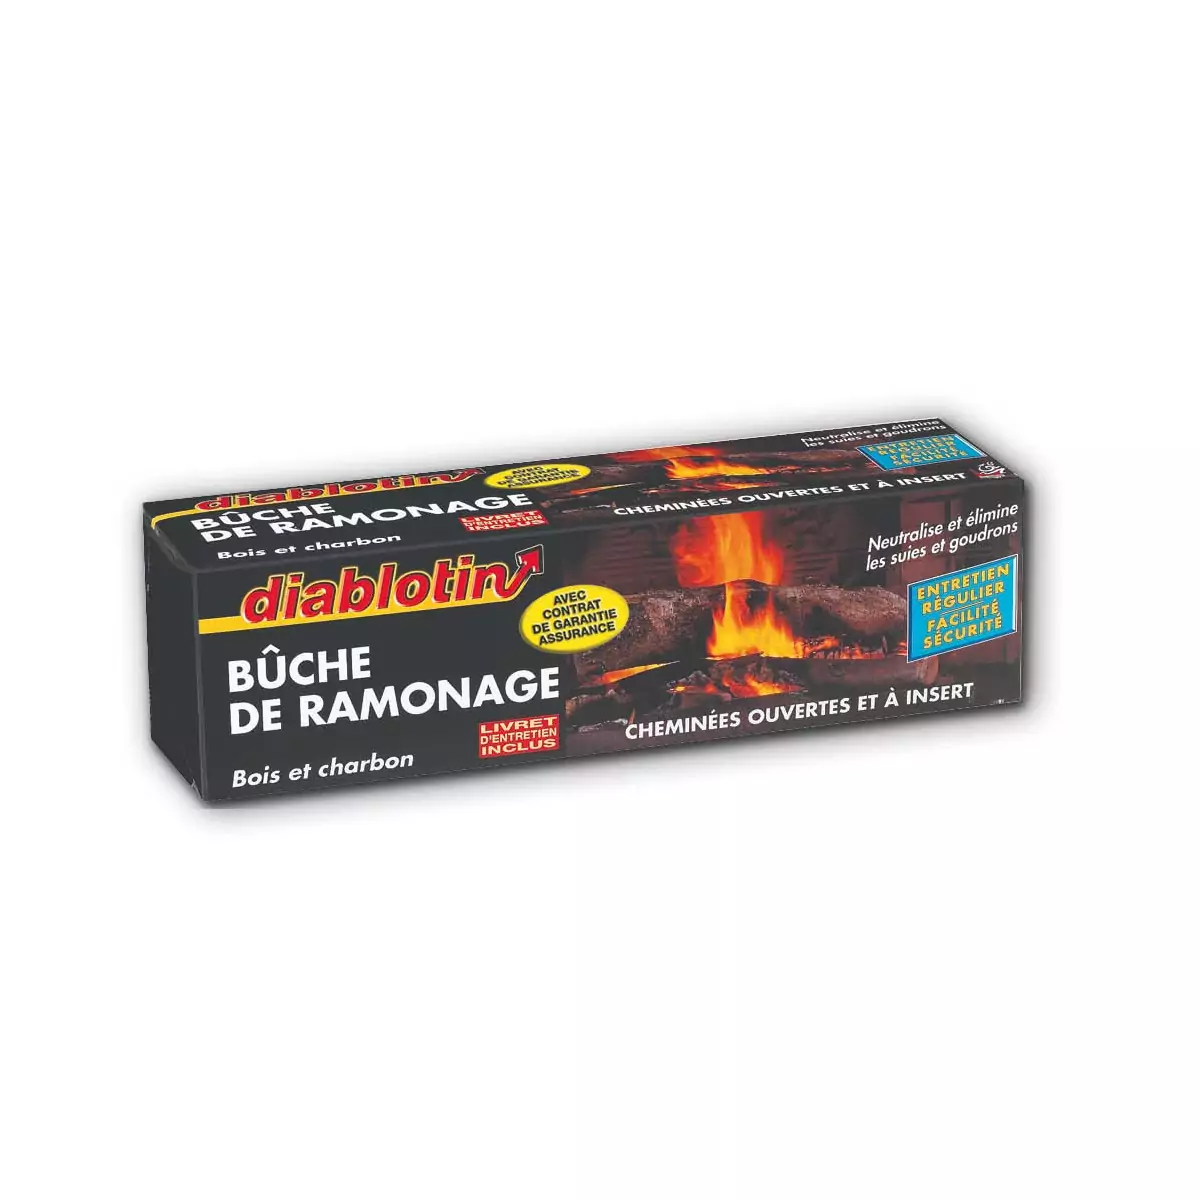 BUCHE DE RAMONAGE DIABLOTIN - Protection et entretien cheminée